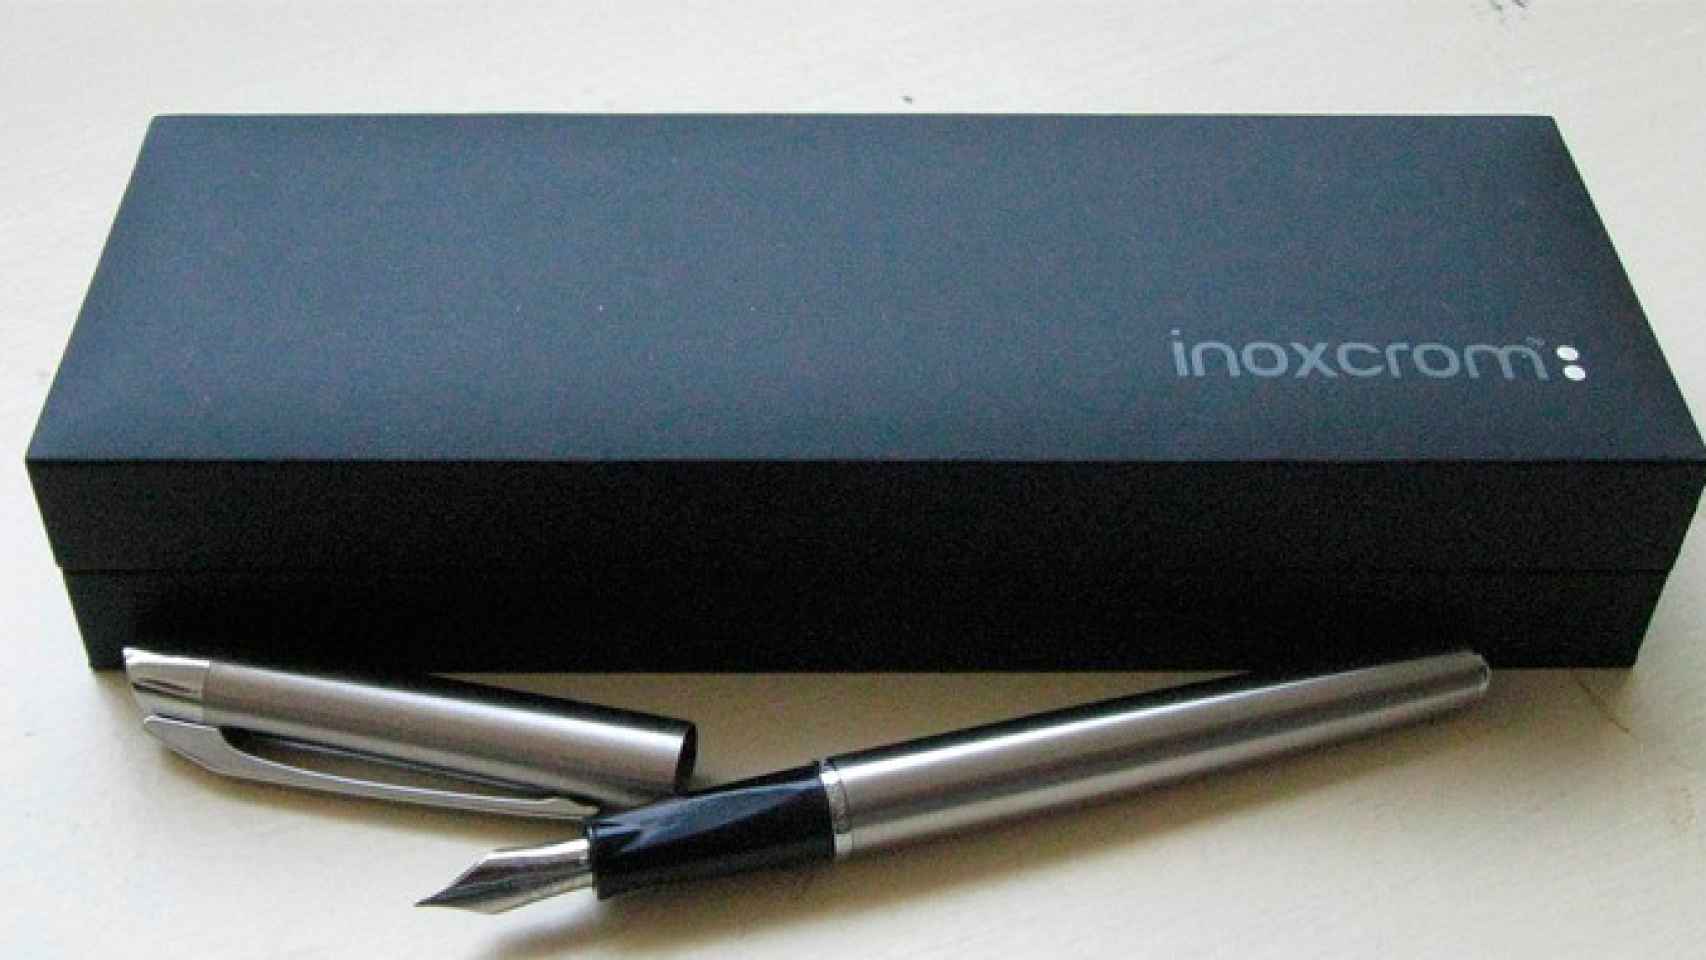 Una pluma estilográfica de Inoxcrom (fabricante de bolígrafos)